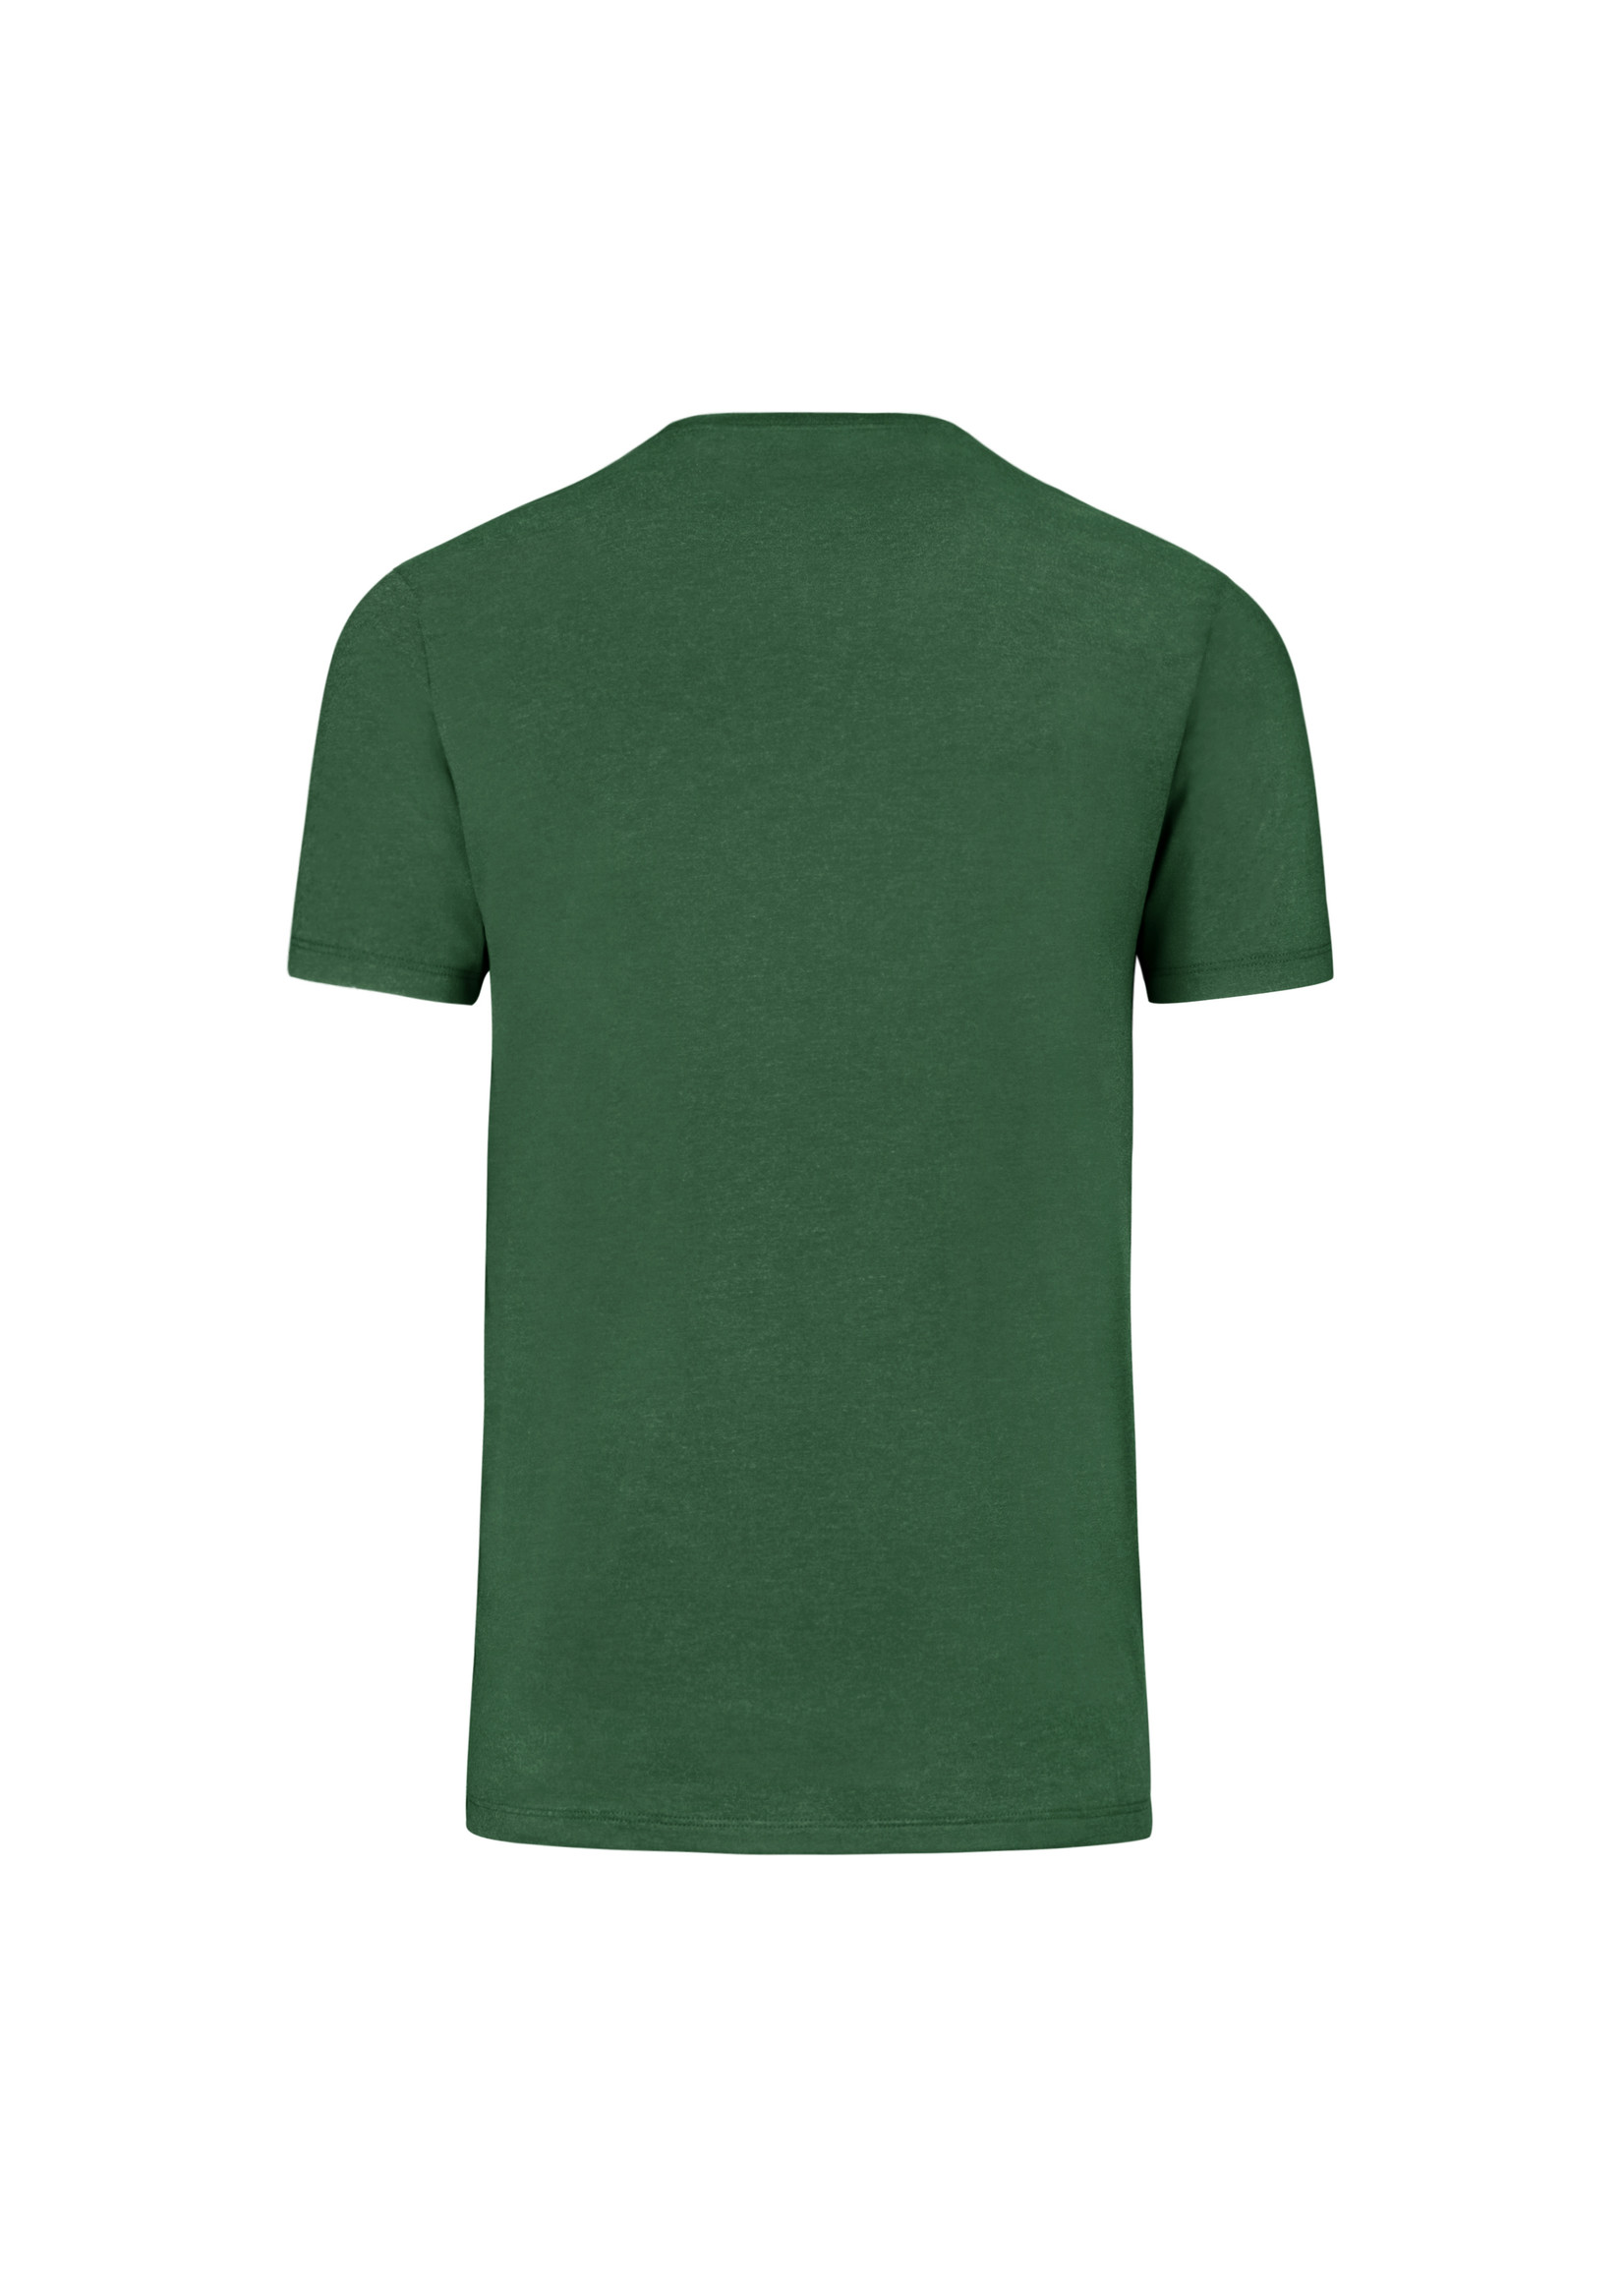 '47 Brand Celtics Clover Logo Shirt